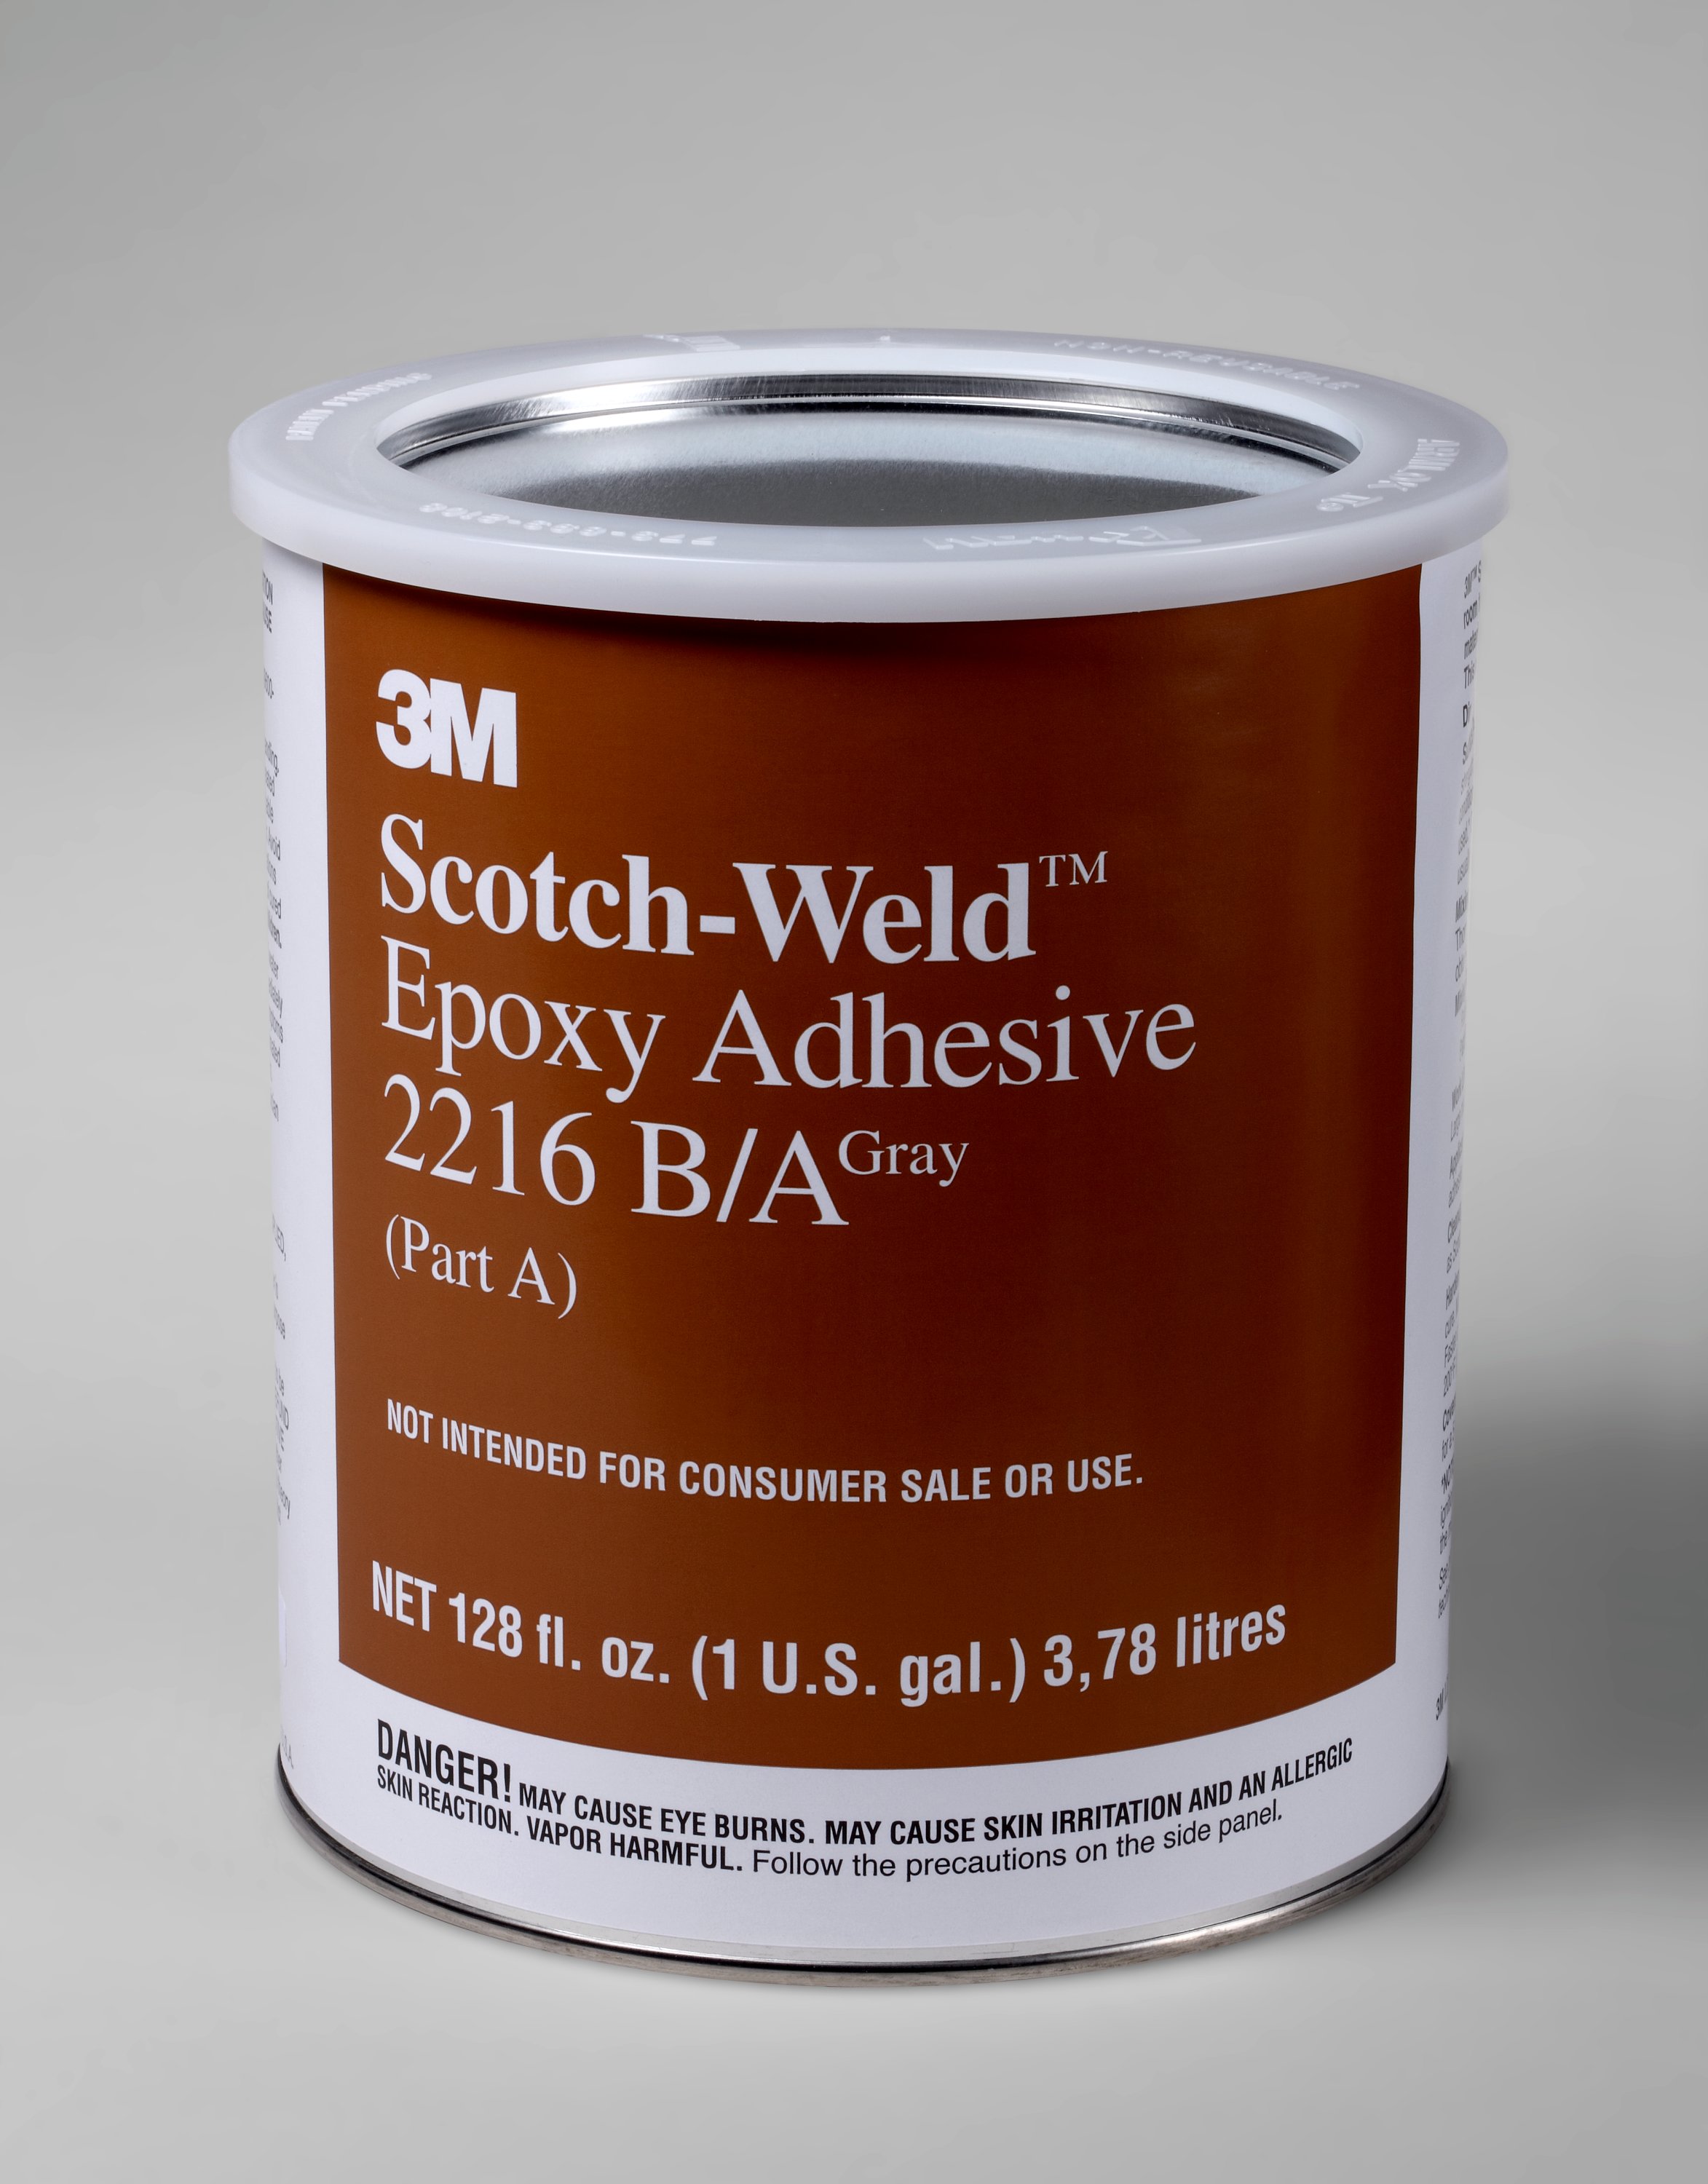 3M™ Scotch-Weld Epoxy Adhesive 2216